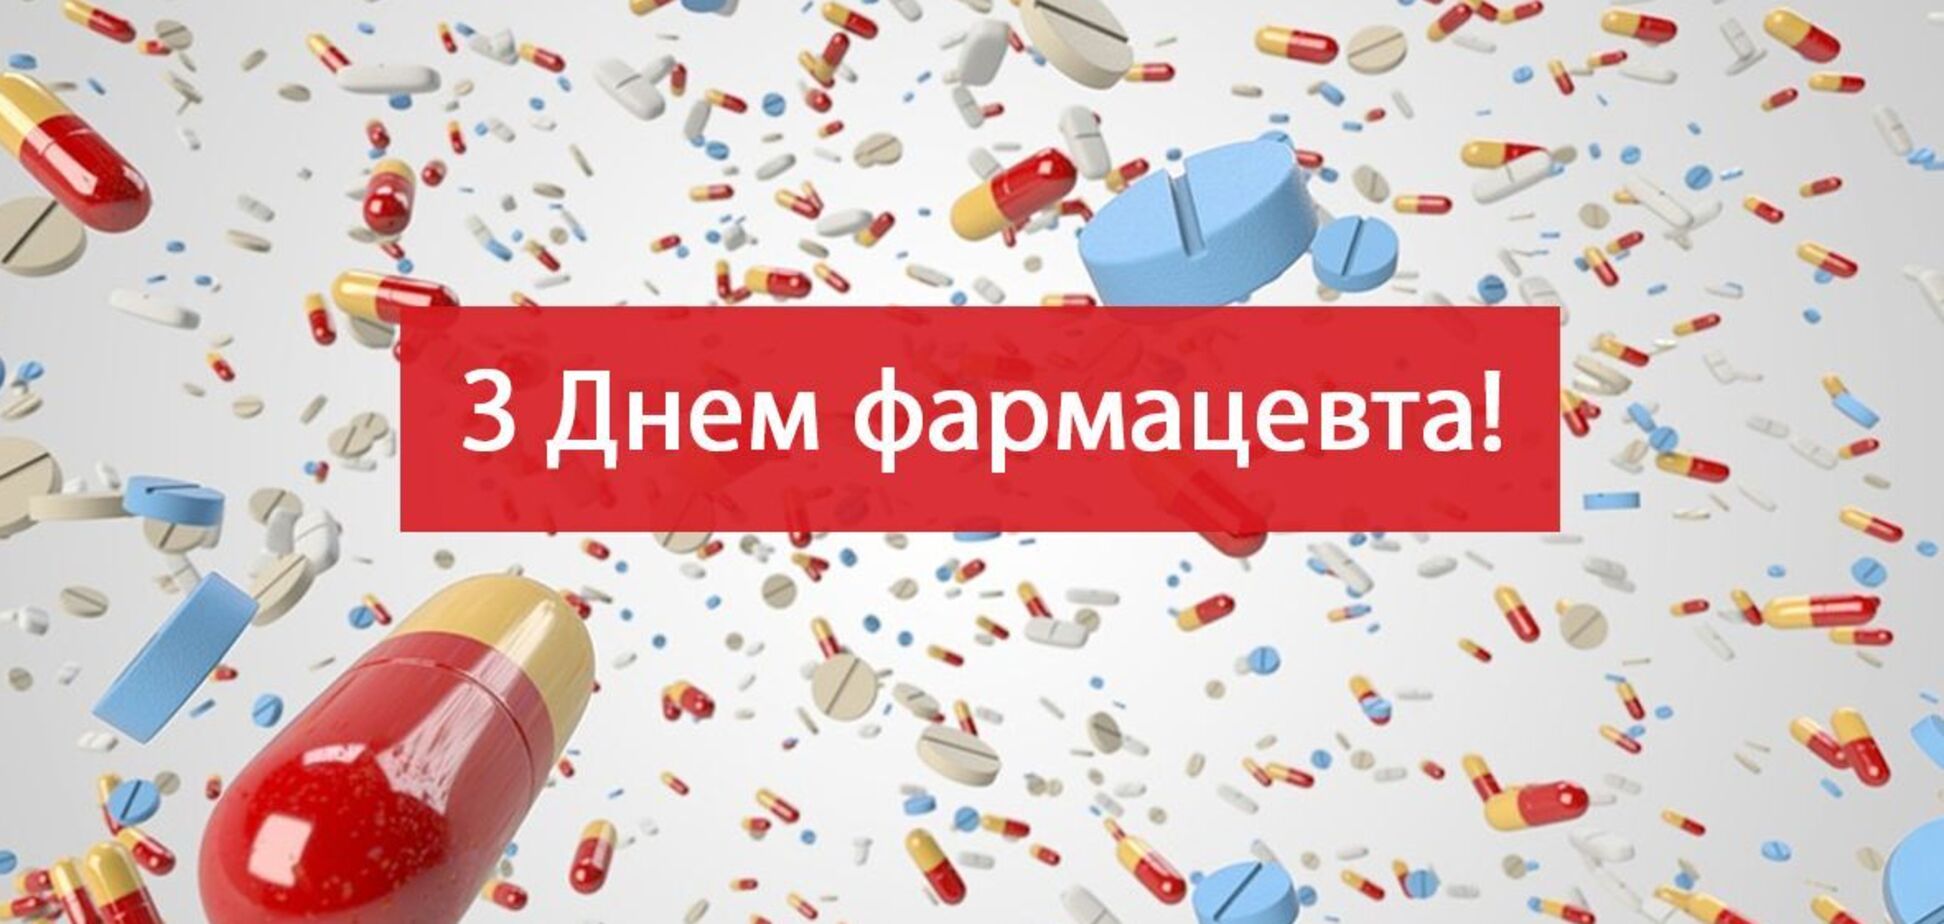 День фармацевта был основан в 1999 году